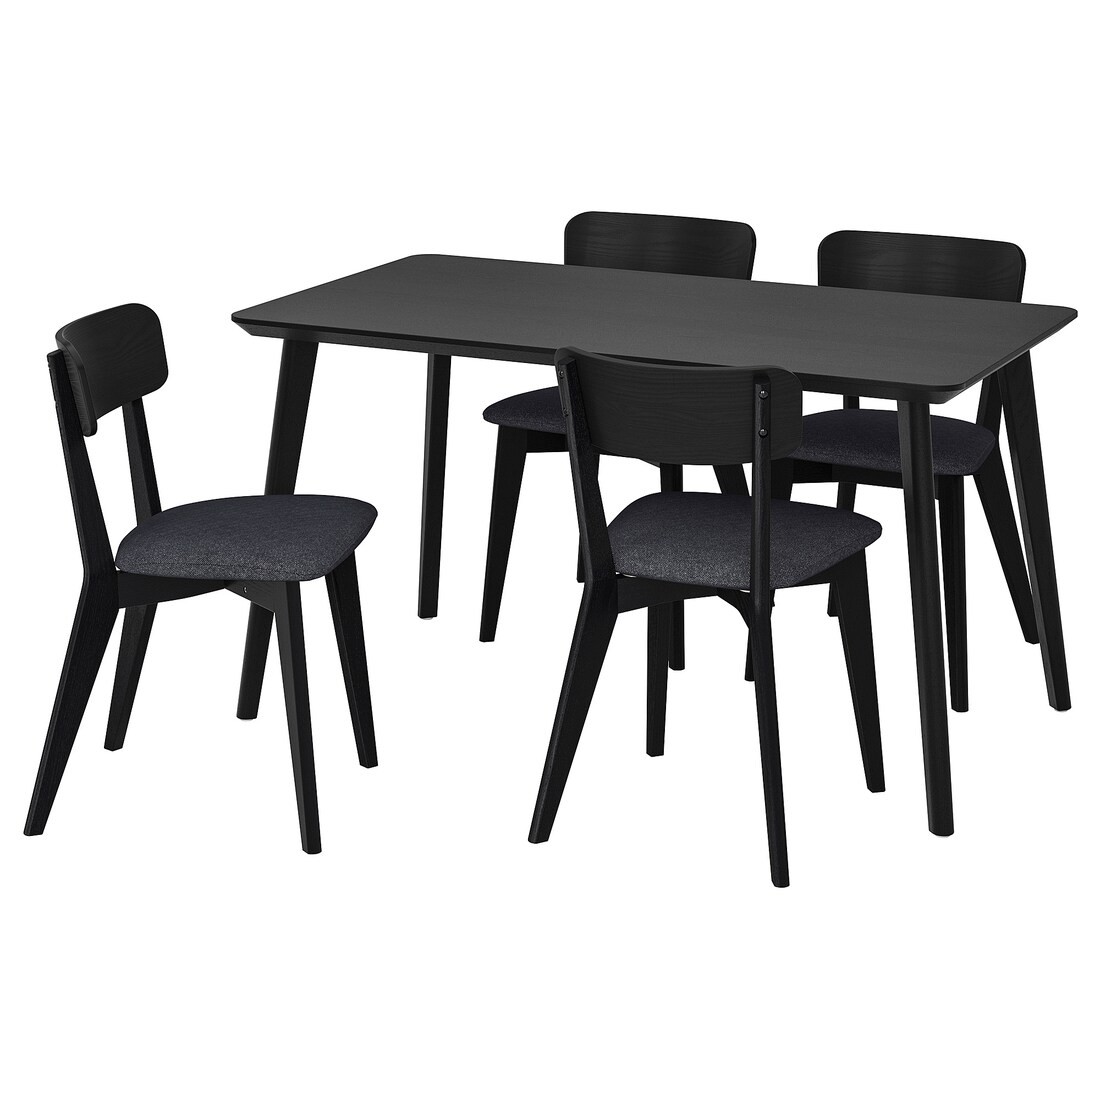 LISABO / LISABO Стол и 4 стула, черный / тальмира черный / серый, 140x78 см